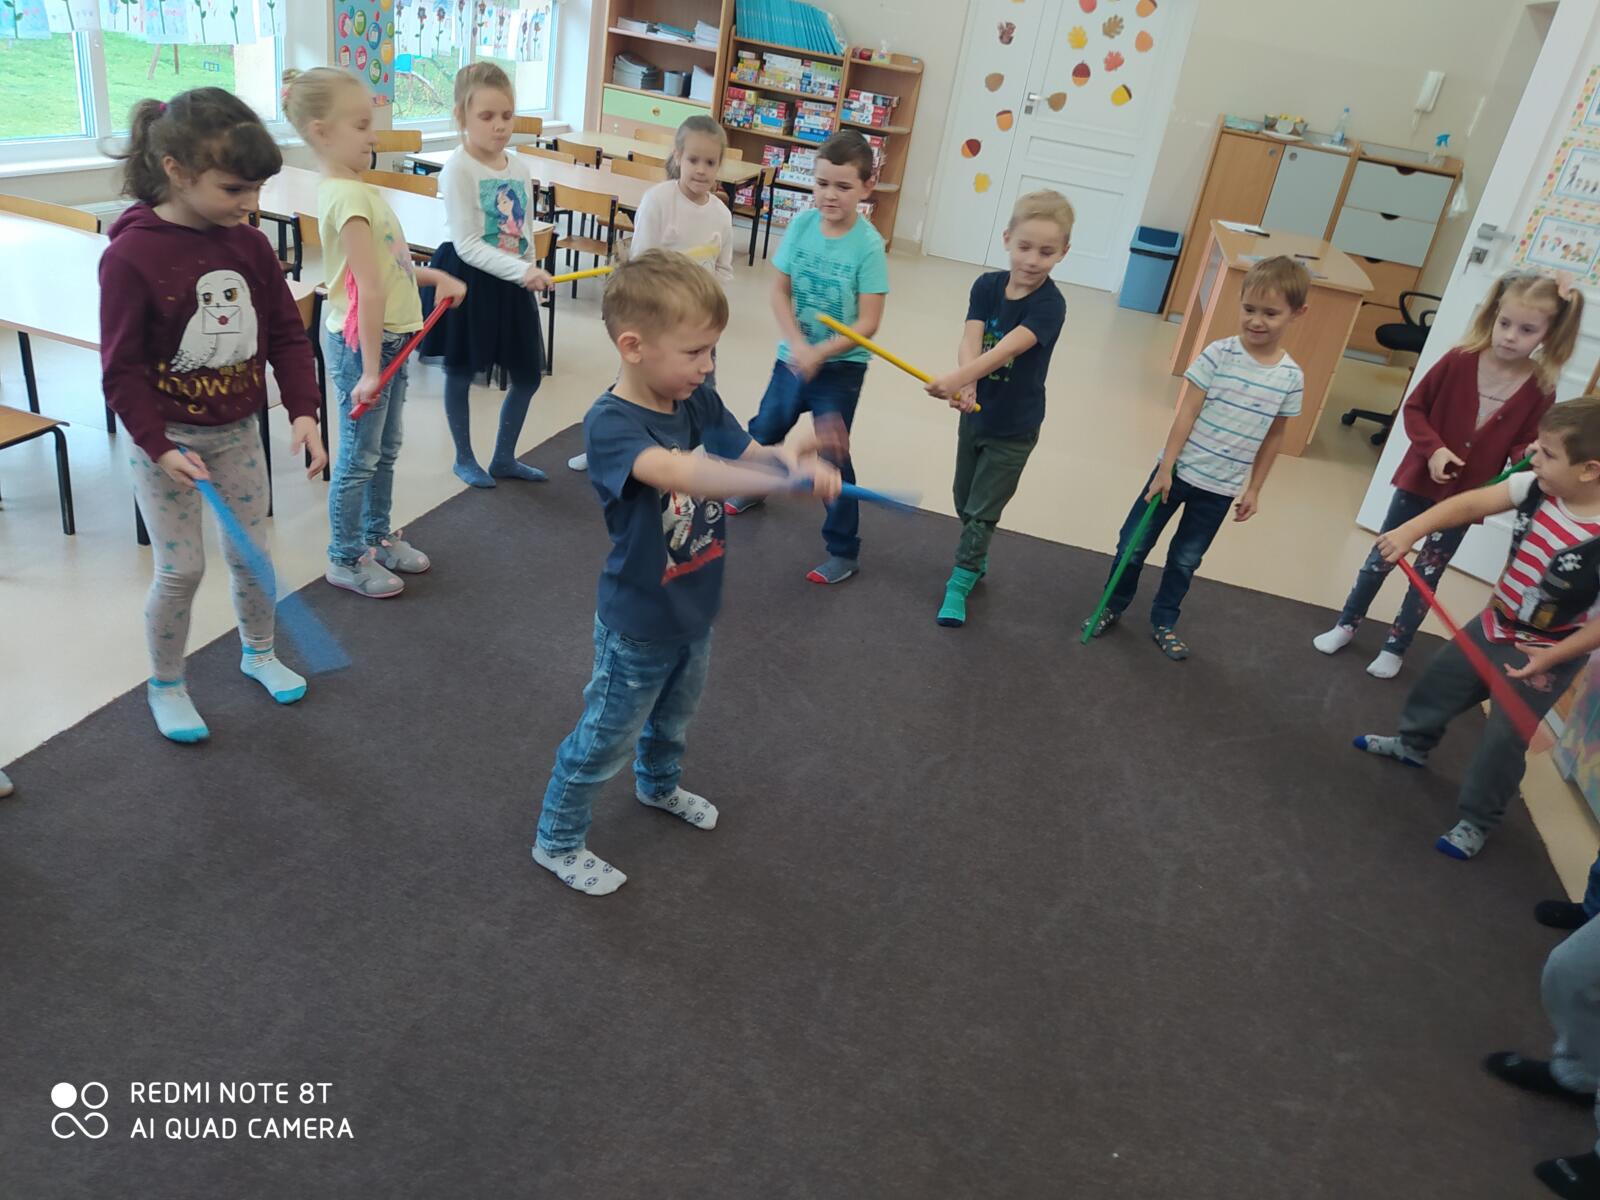 Zabawa przy muzyce z laseczkami - naśladowanie. W środku koła dziecko pokazuje rytmiczne ruchy laseczką według własnego pomysłu, reszta grupy naśladuje.